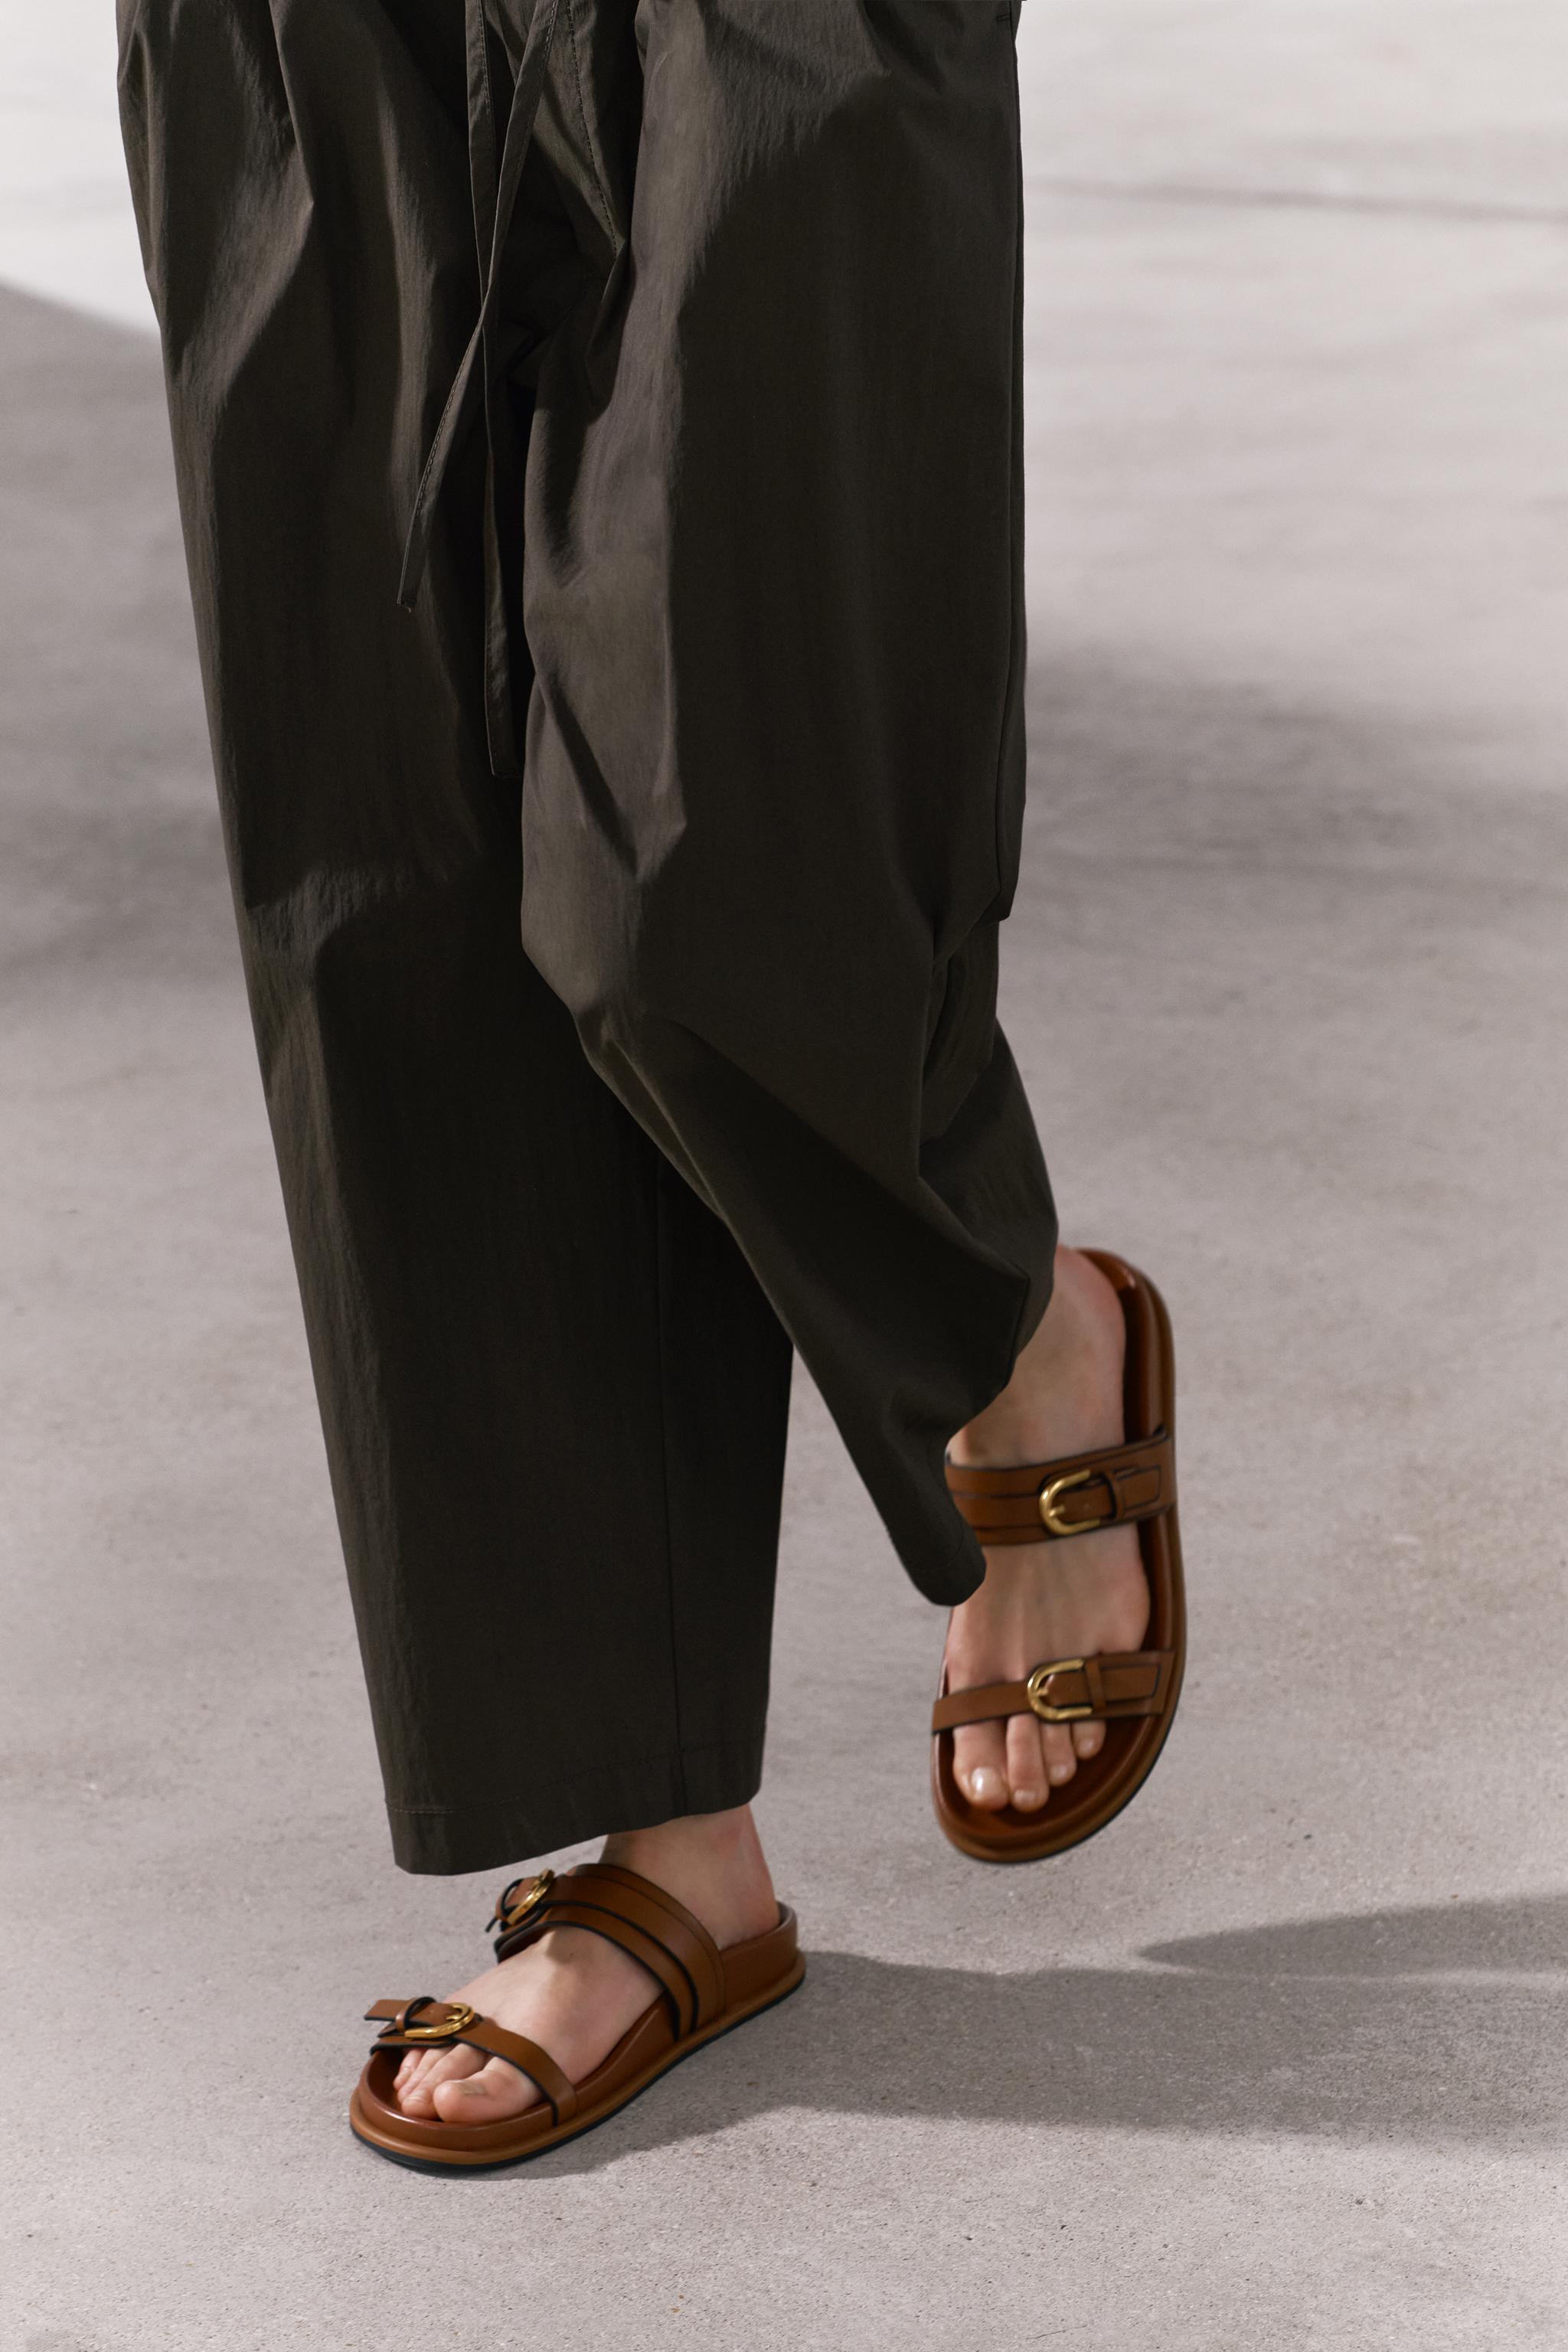 Women's Flat Sandals, Explore our New Arrivals